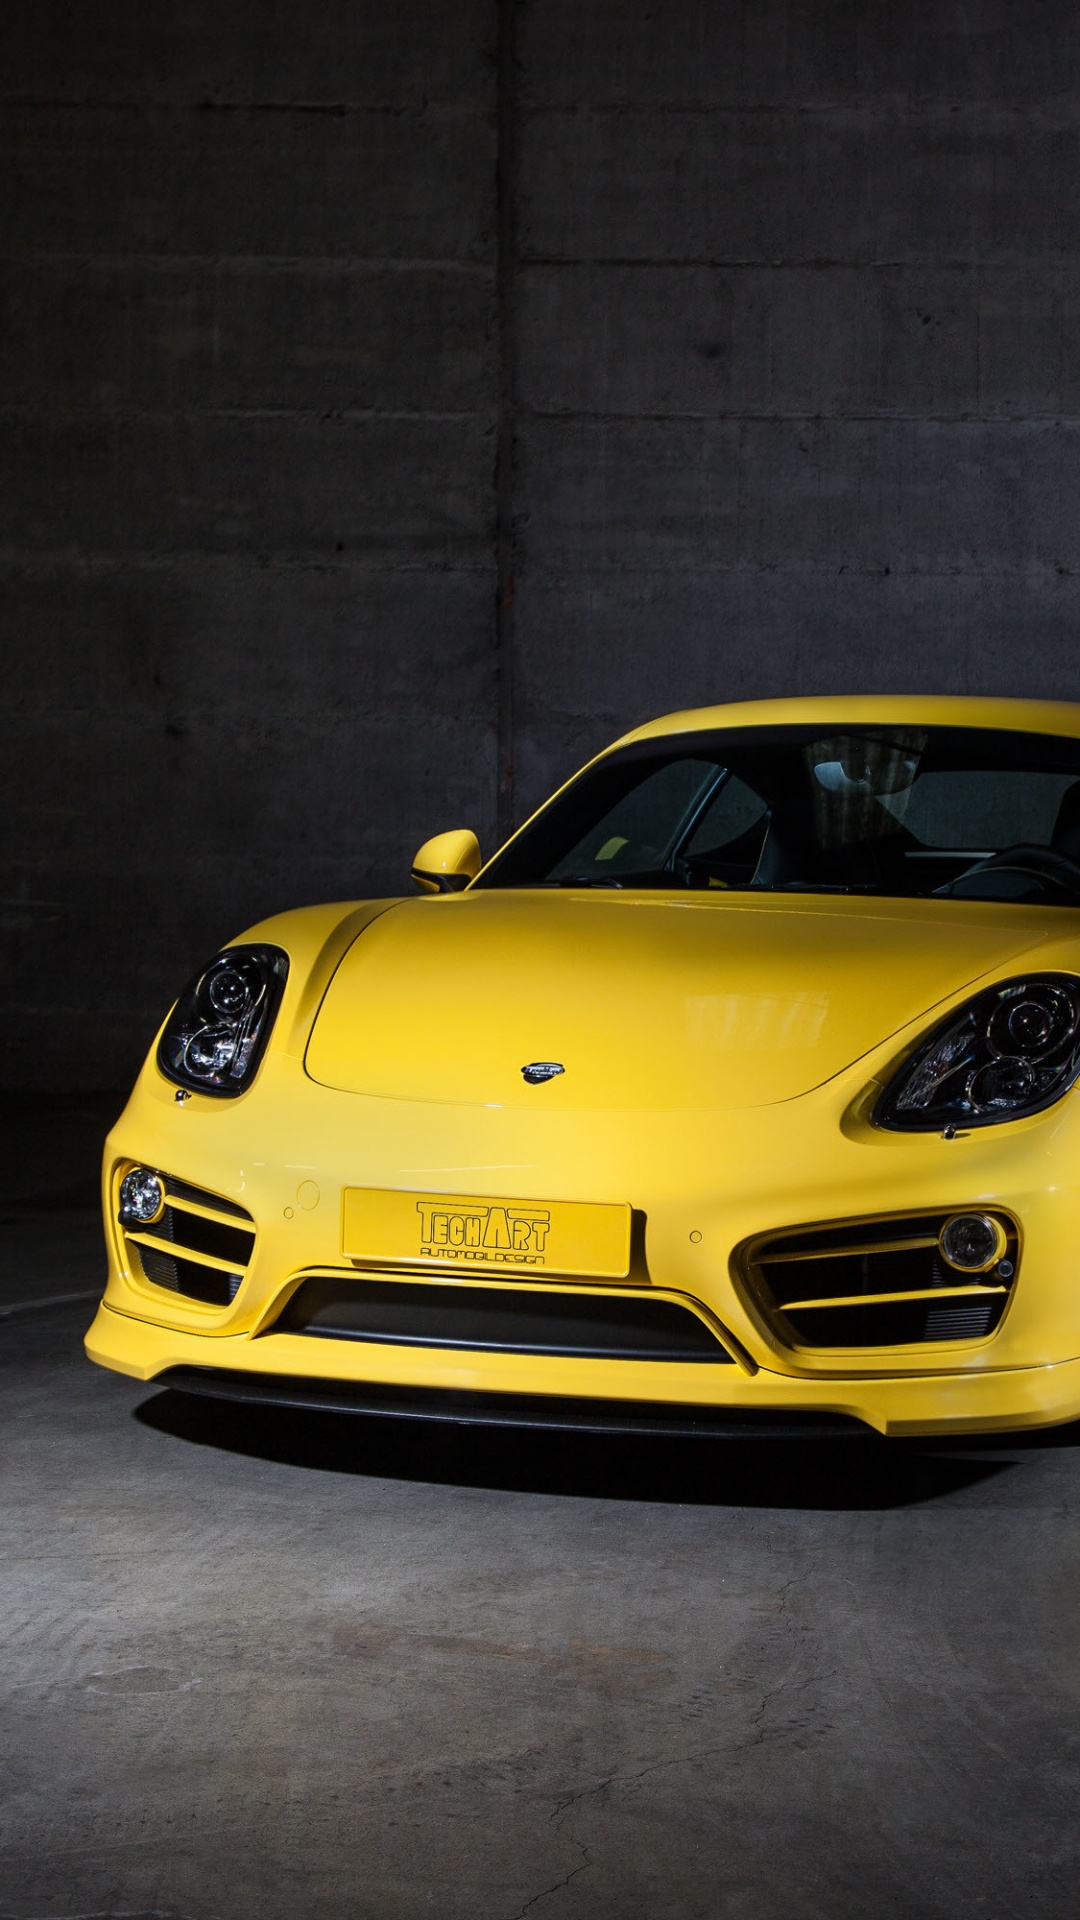 Gelber Porsche 911 in Einer Garage Geparkt. Wallpaper in 1080x1920 Resolution